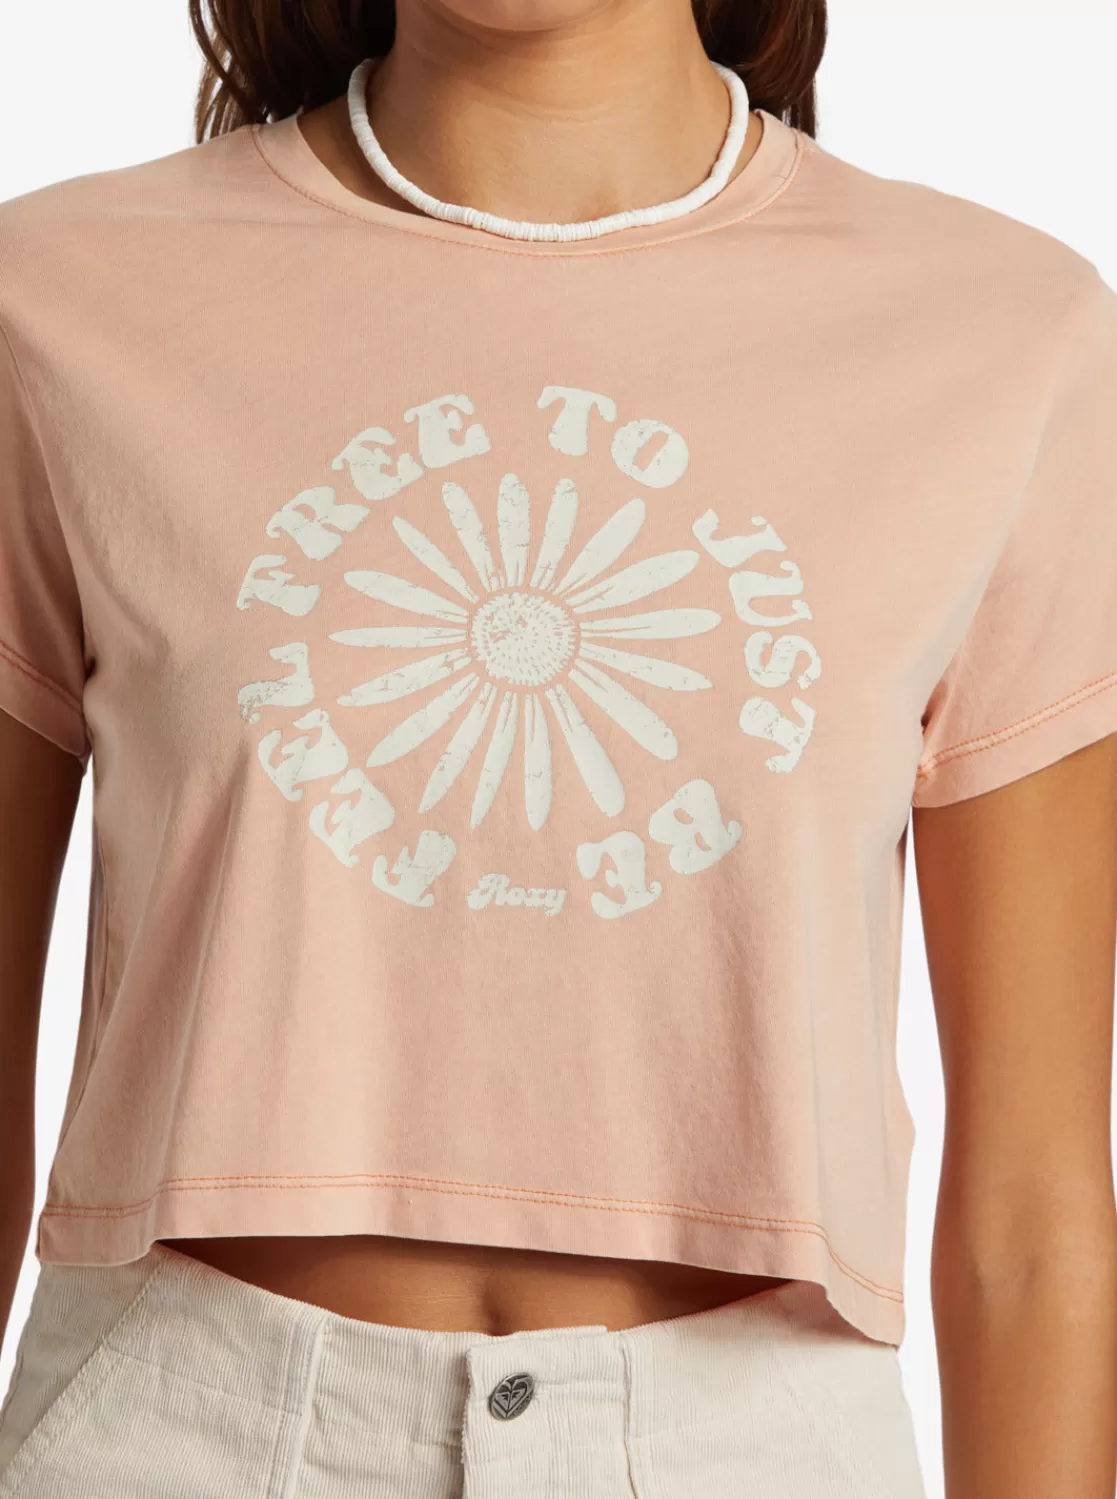 Feel Free Cropped T-Shirt-ROXY Sale